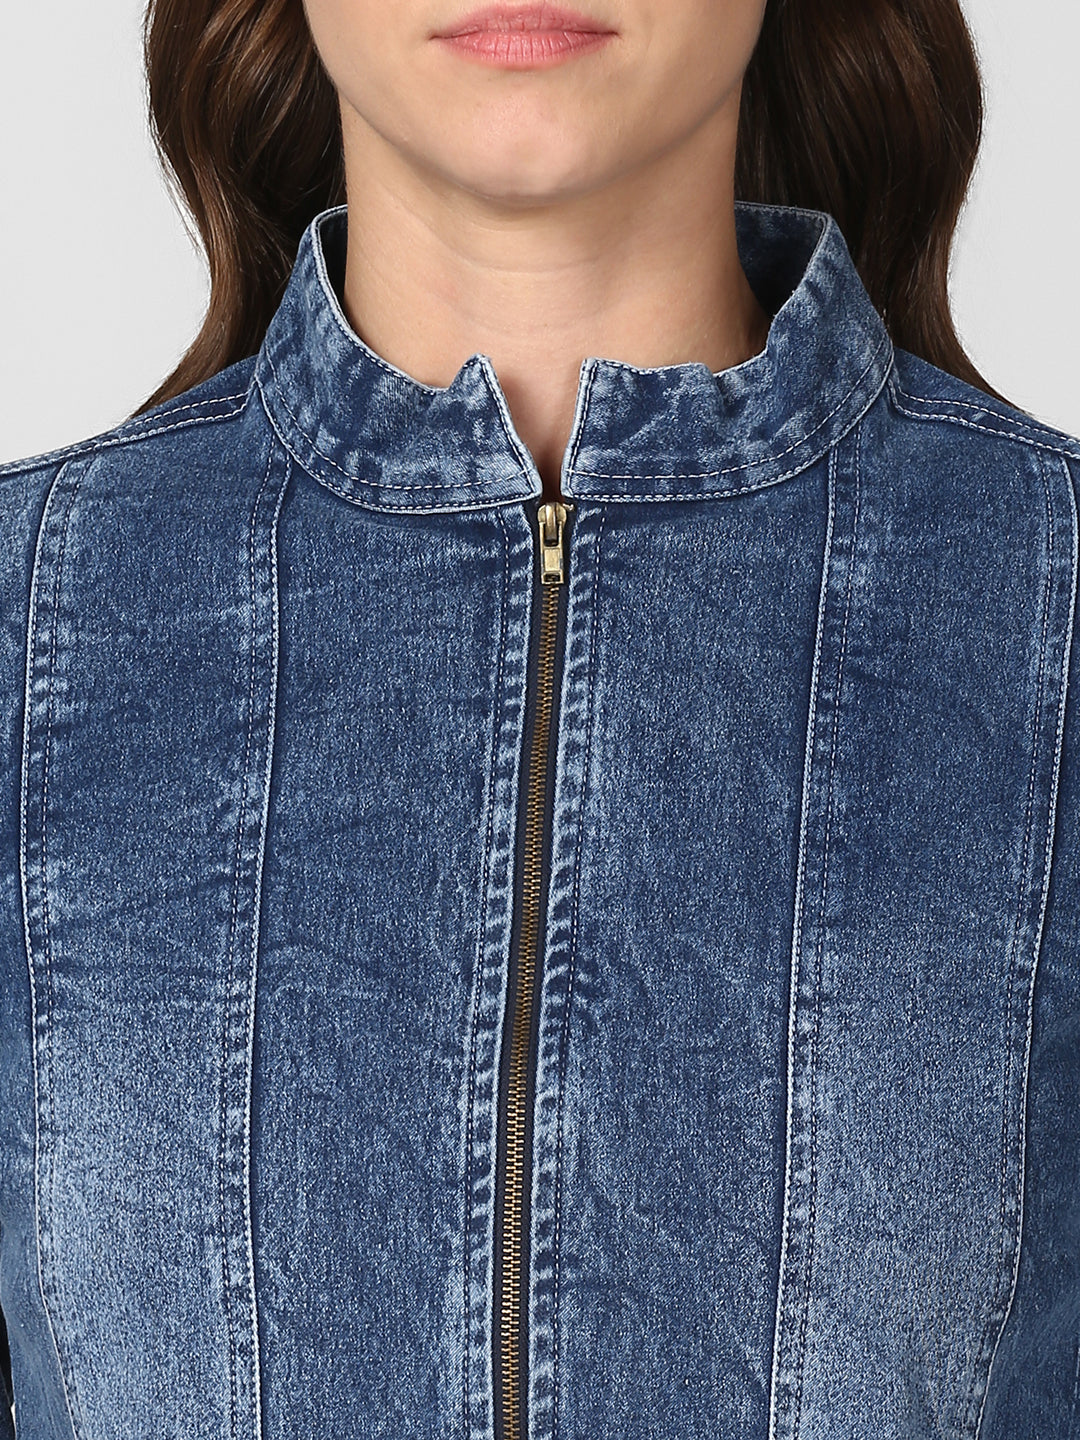 Women's Blue Denim Jacket with Zip